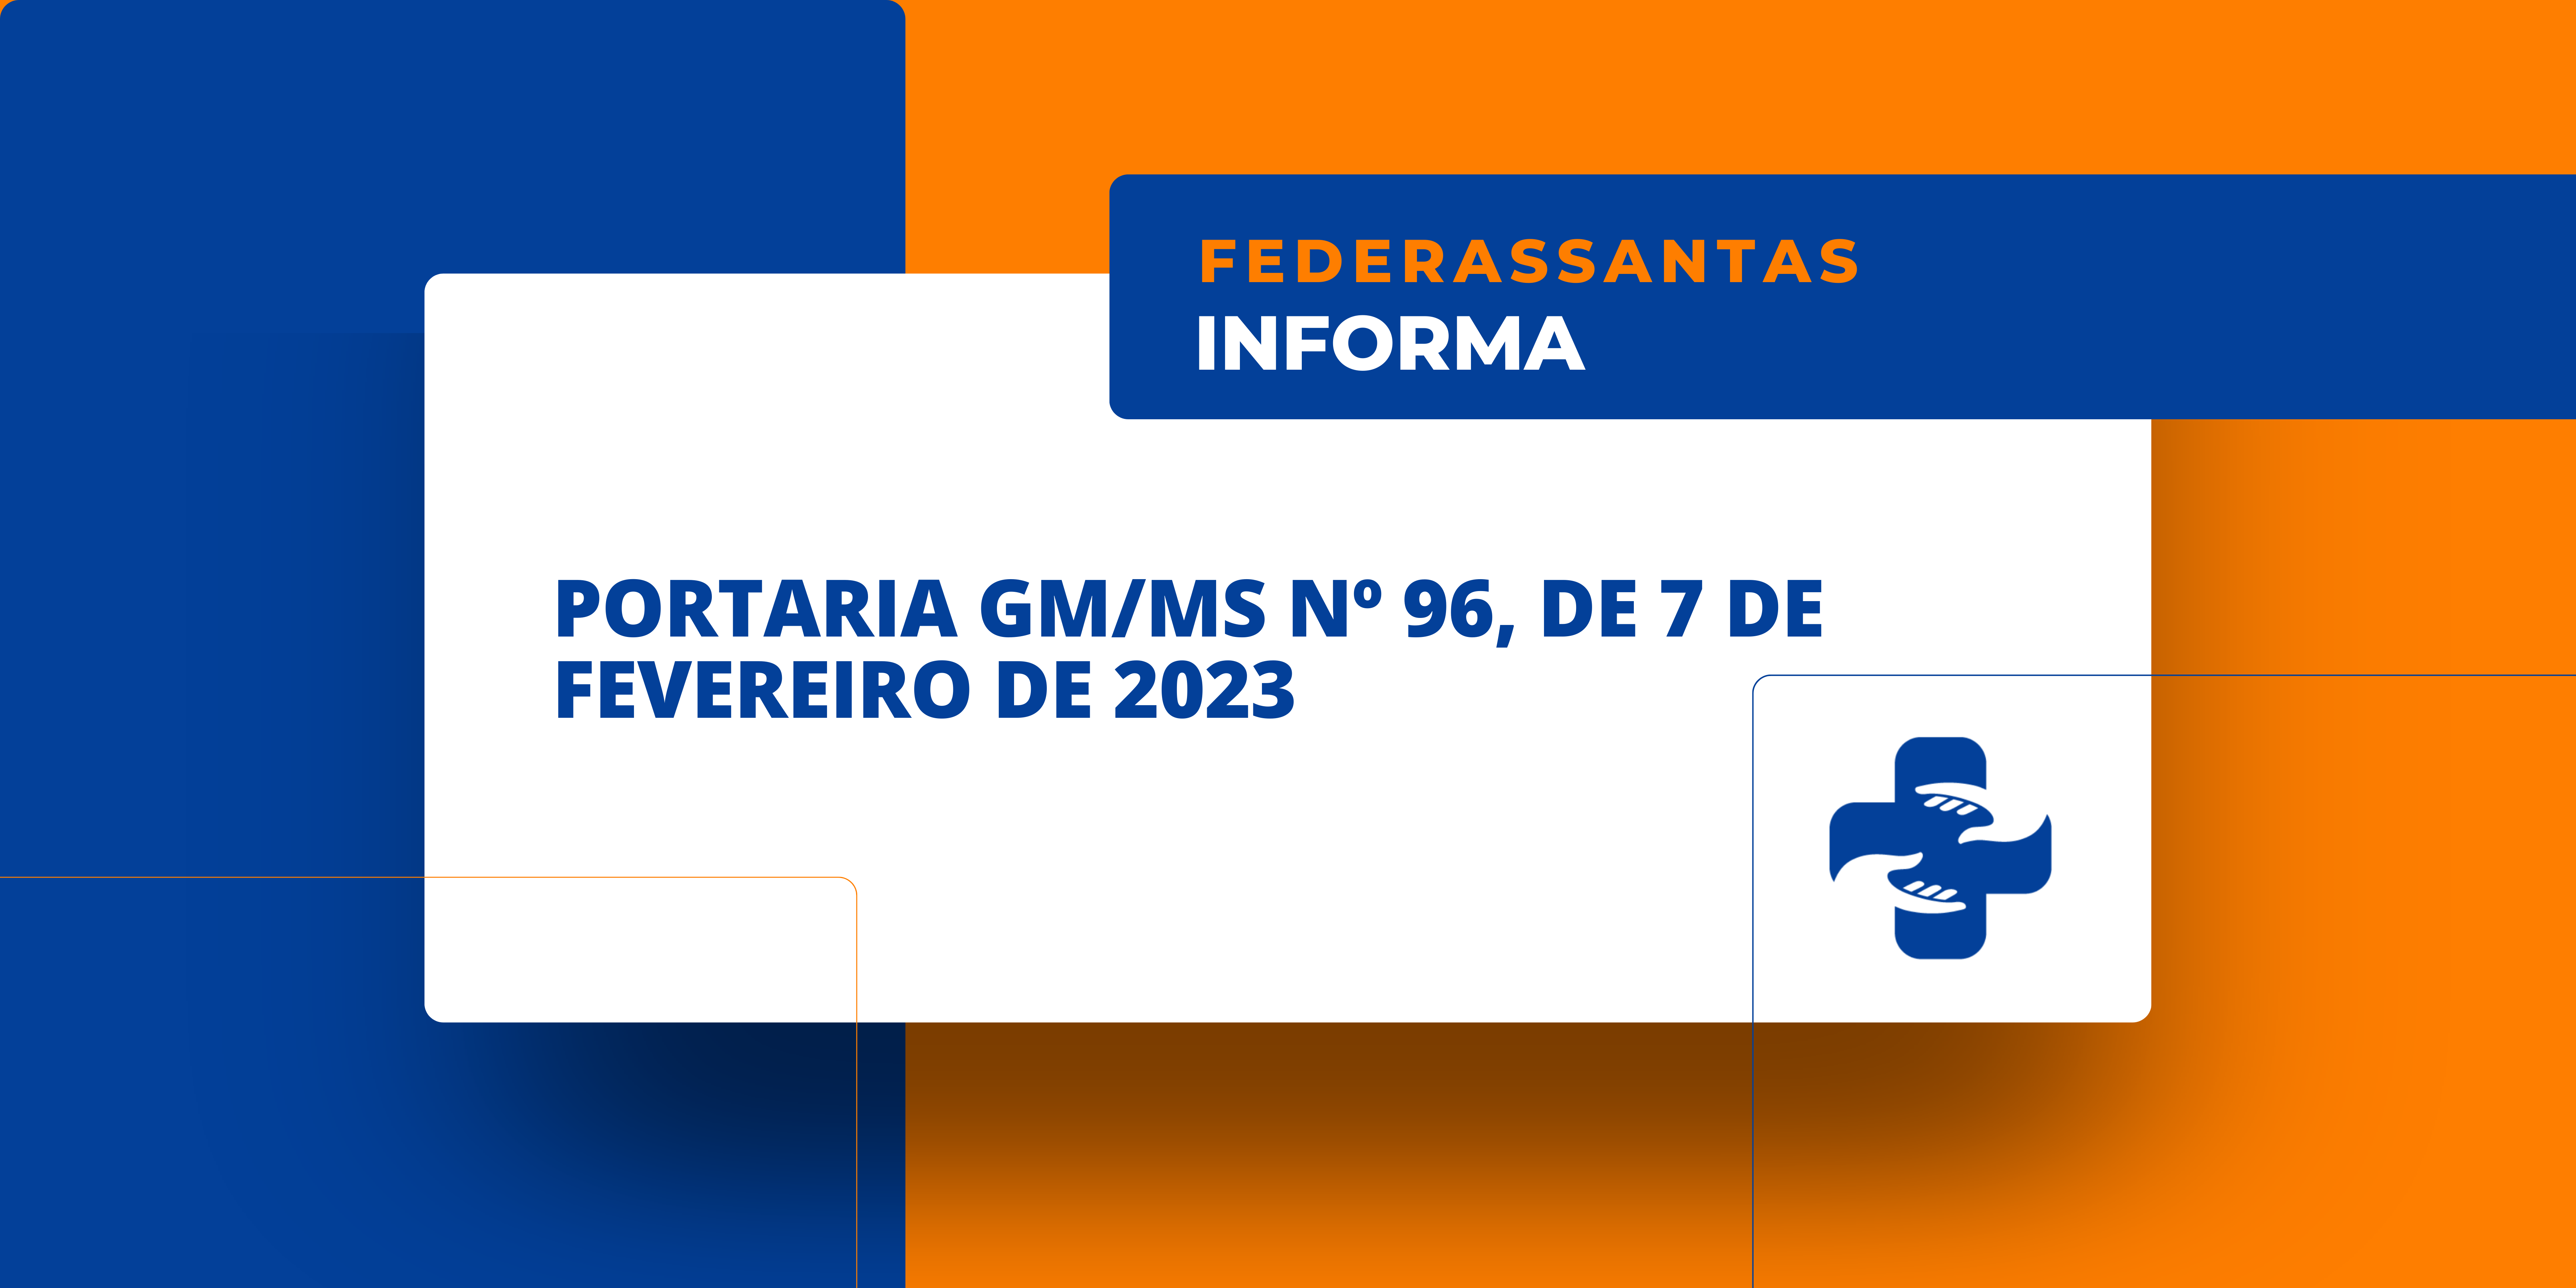 PORTARIA GM/MS Nº 96, DE 7 DE FEVEREIRO DE 2023